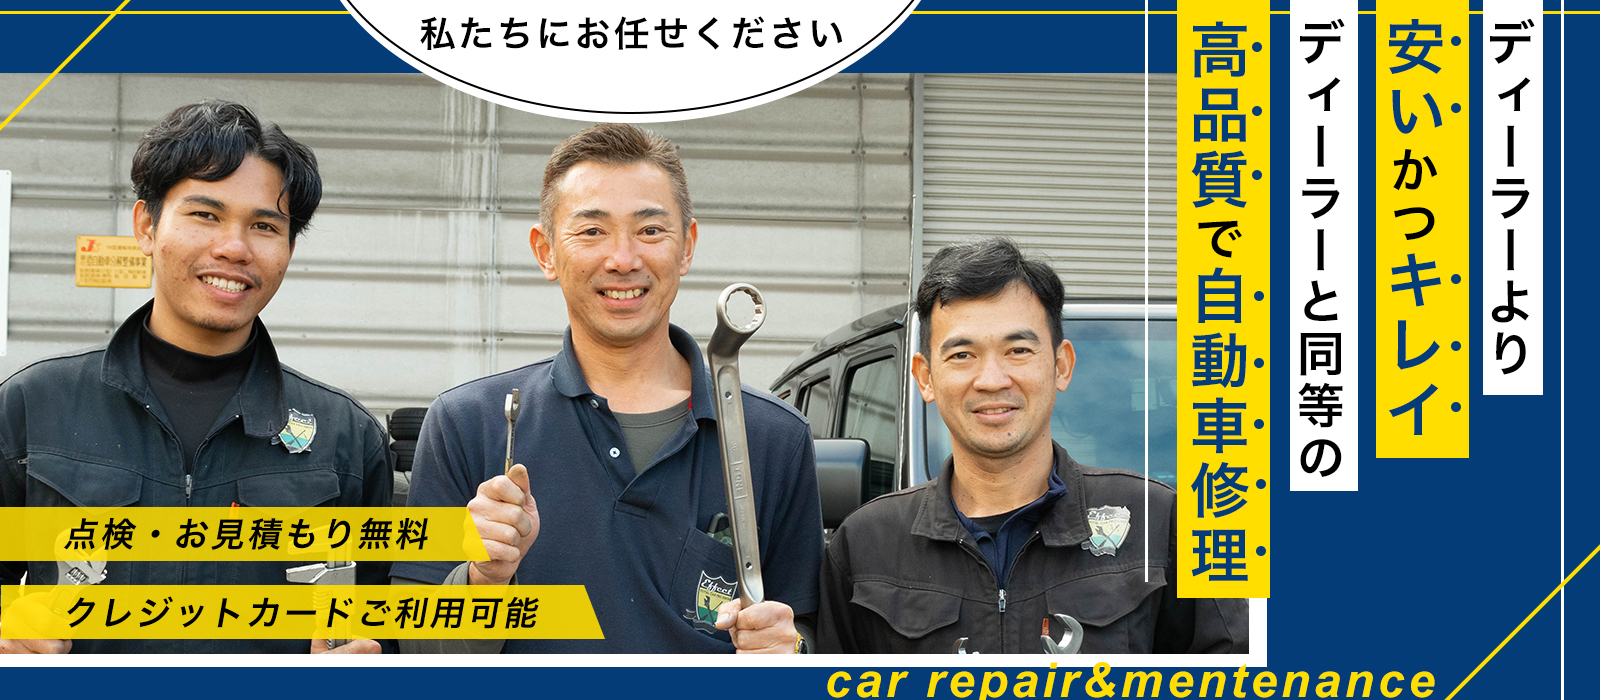 エフェクト| あらゆる国産・輸入車の整備・車検・修理は広島県広島市・エフェクトにお任せください